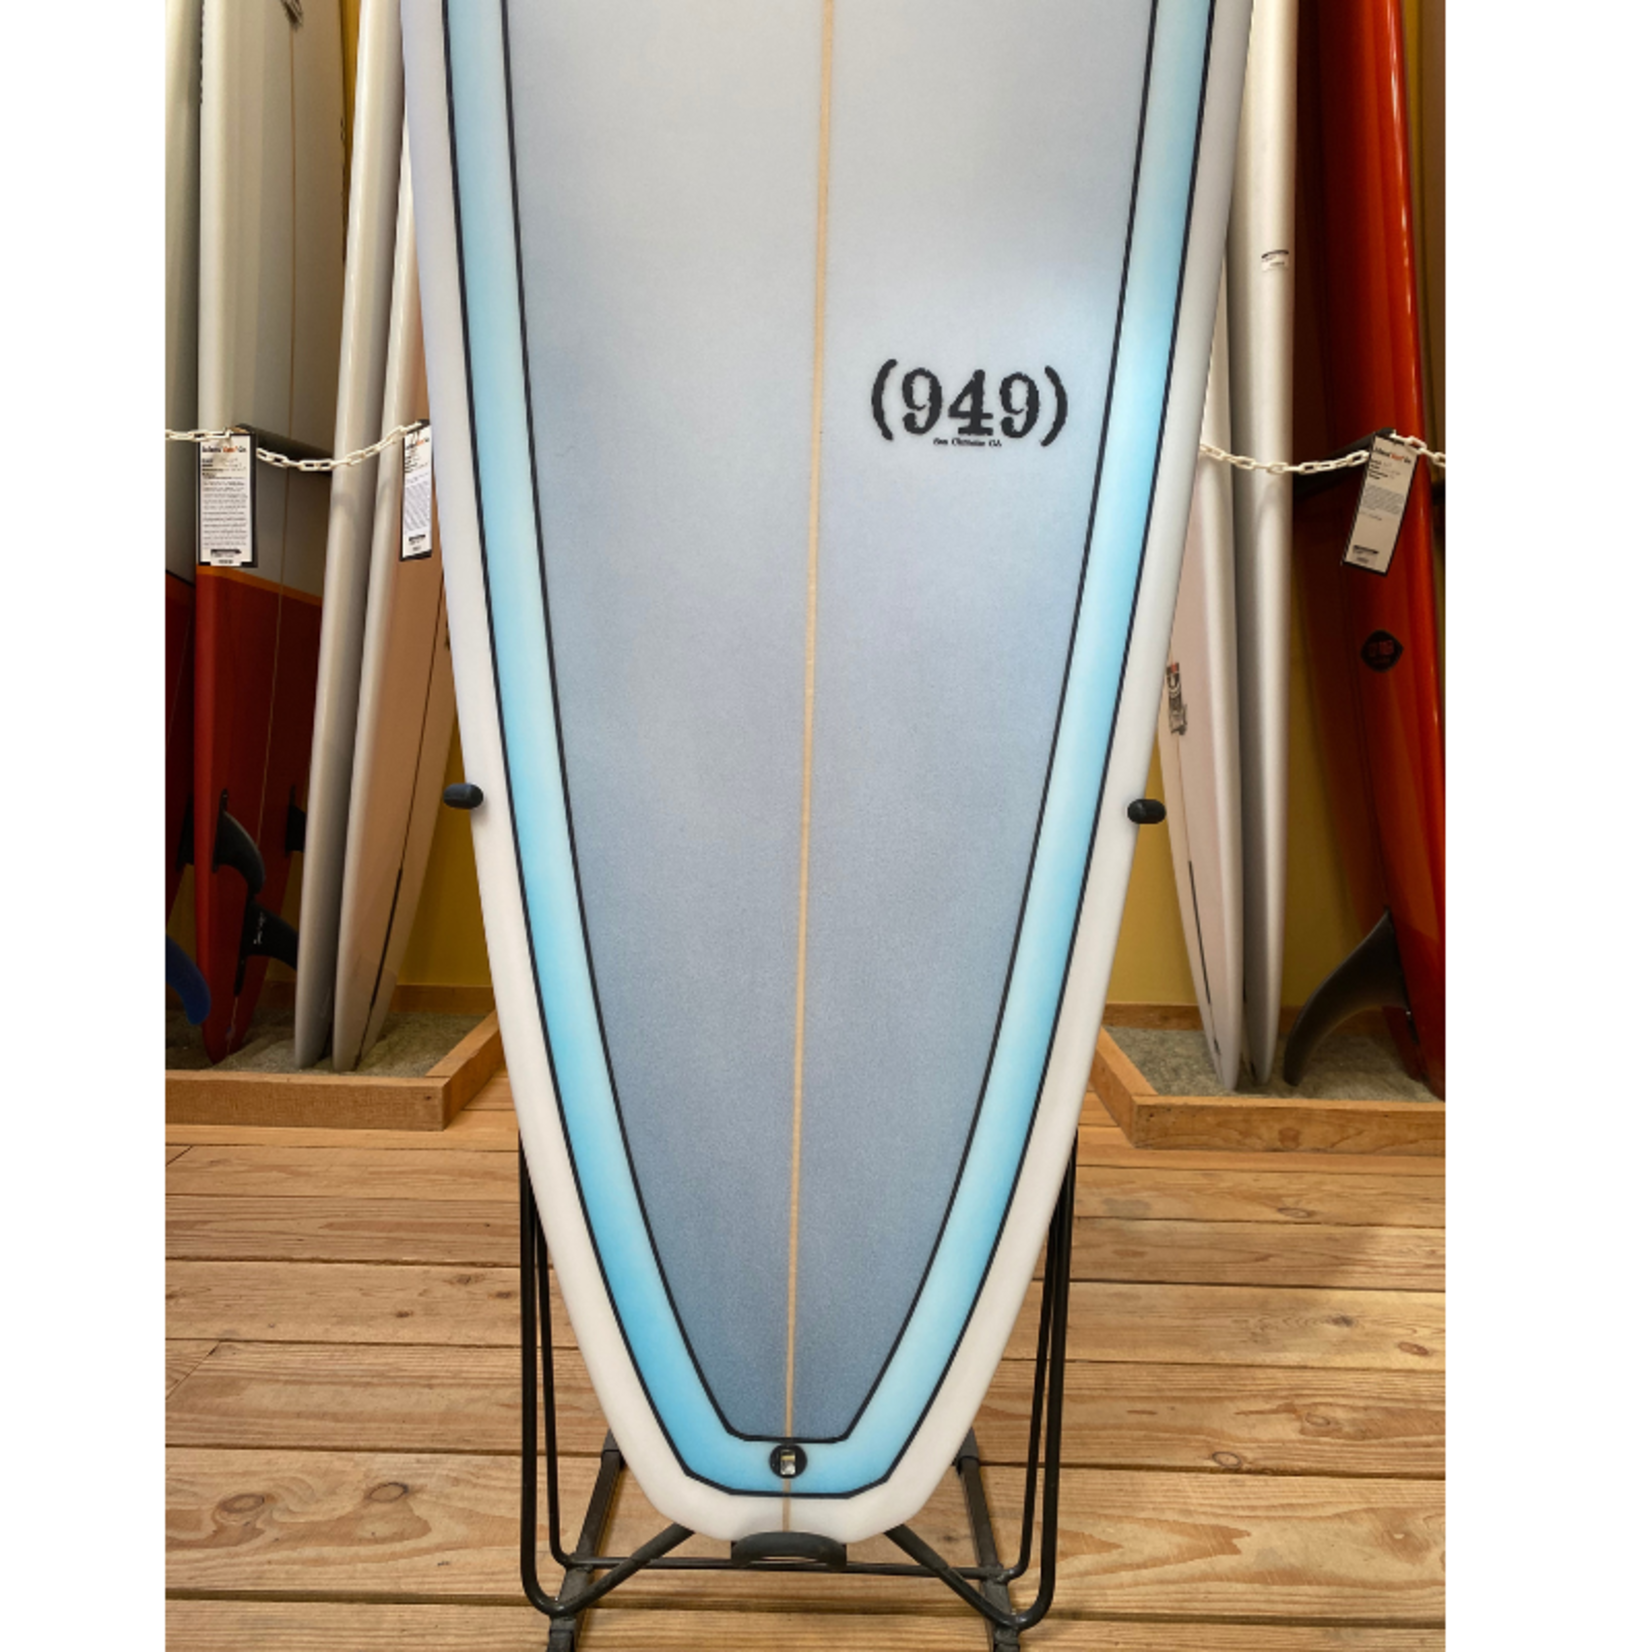 Stewart Surfboards 7'6 Stewart (949)  #126973*